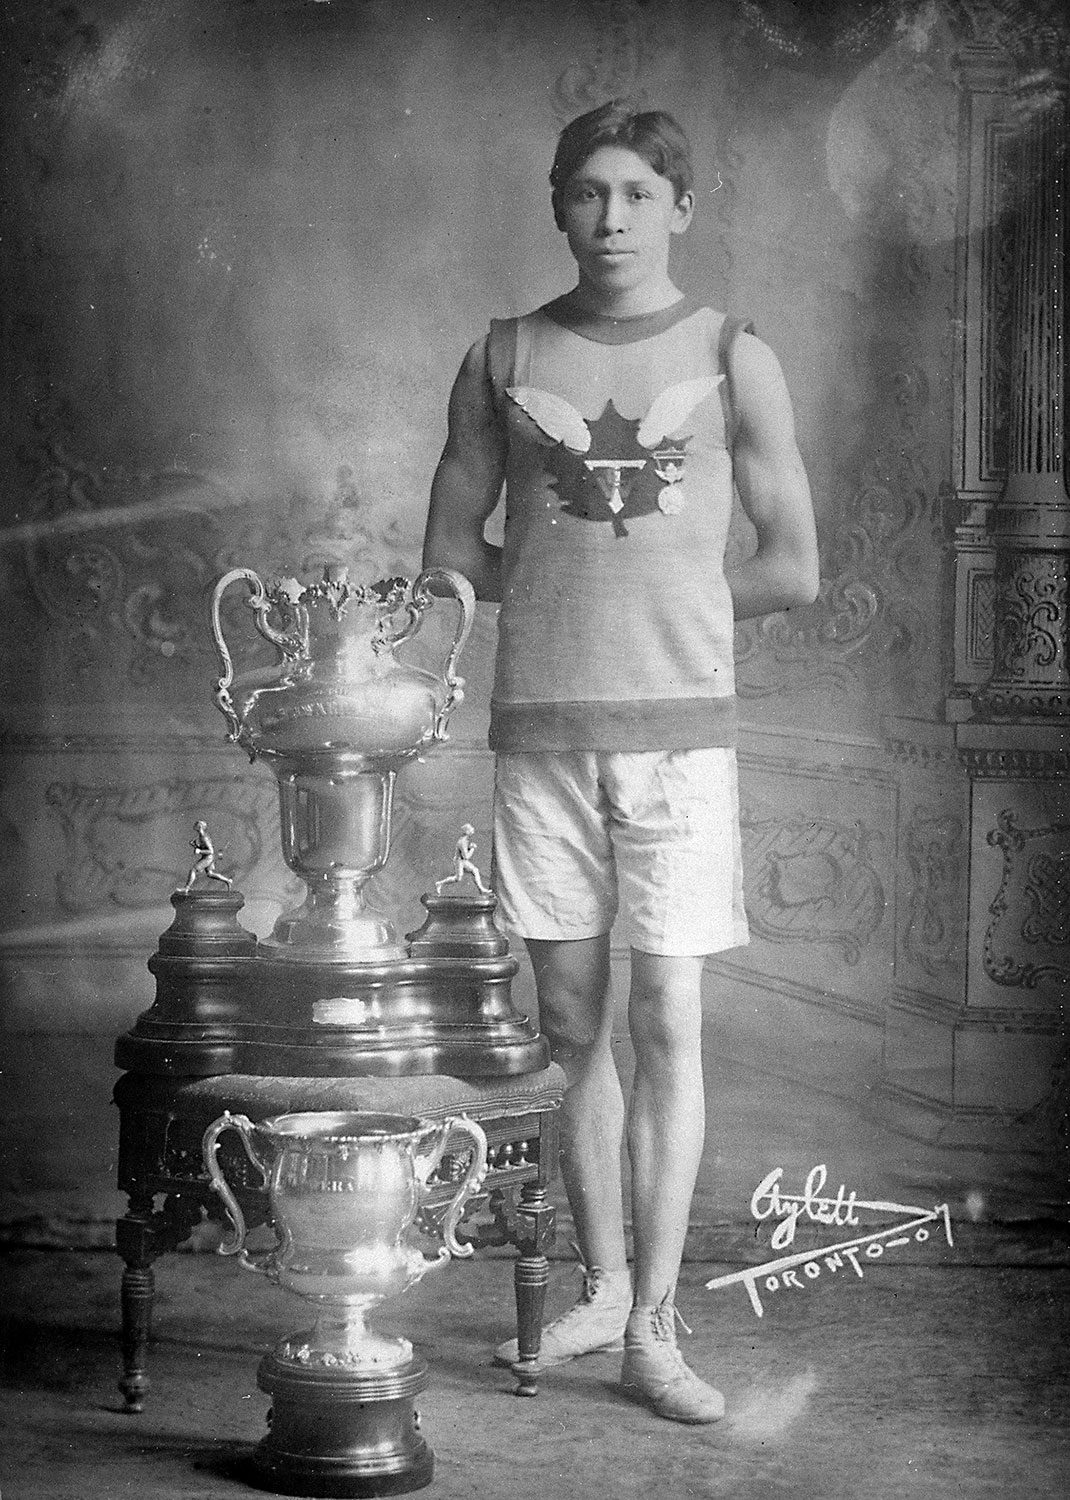 Tom Longboat avec ses trophées de course (22 avril 1907). Photo avec l’aimable autorisation de Bibliothèque et Archives Canada.